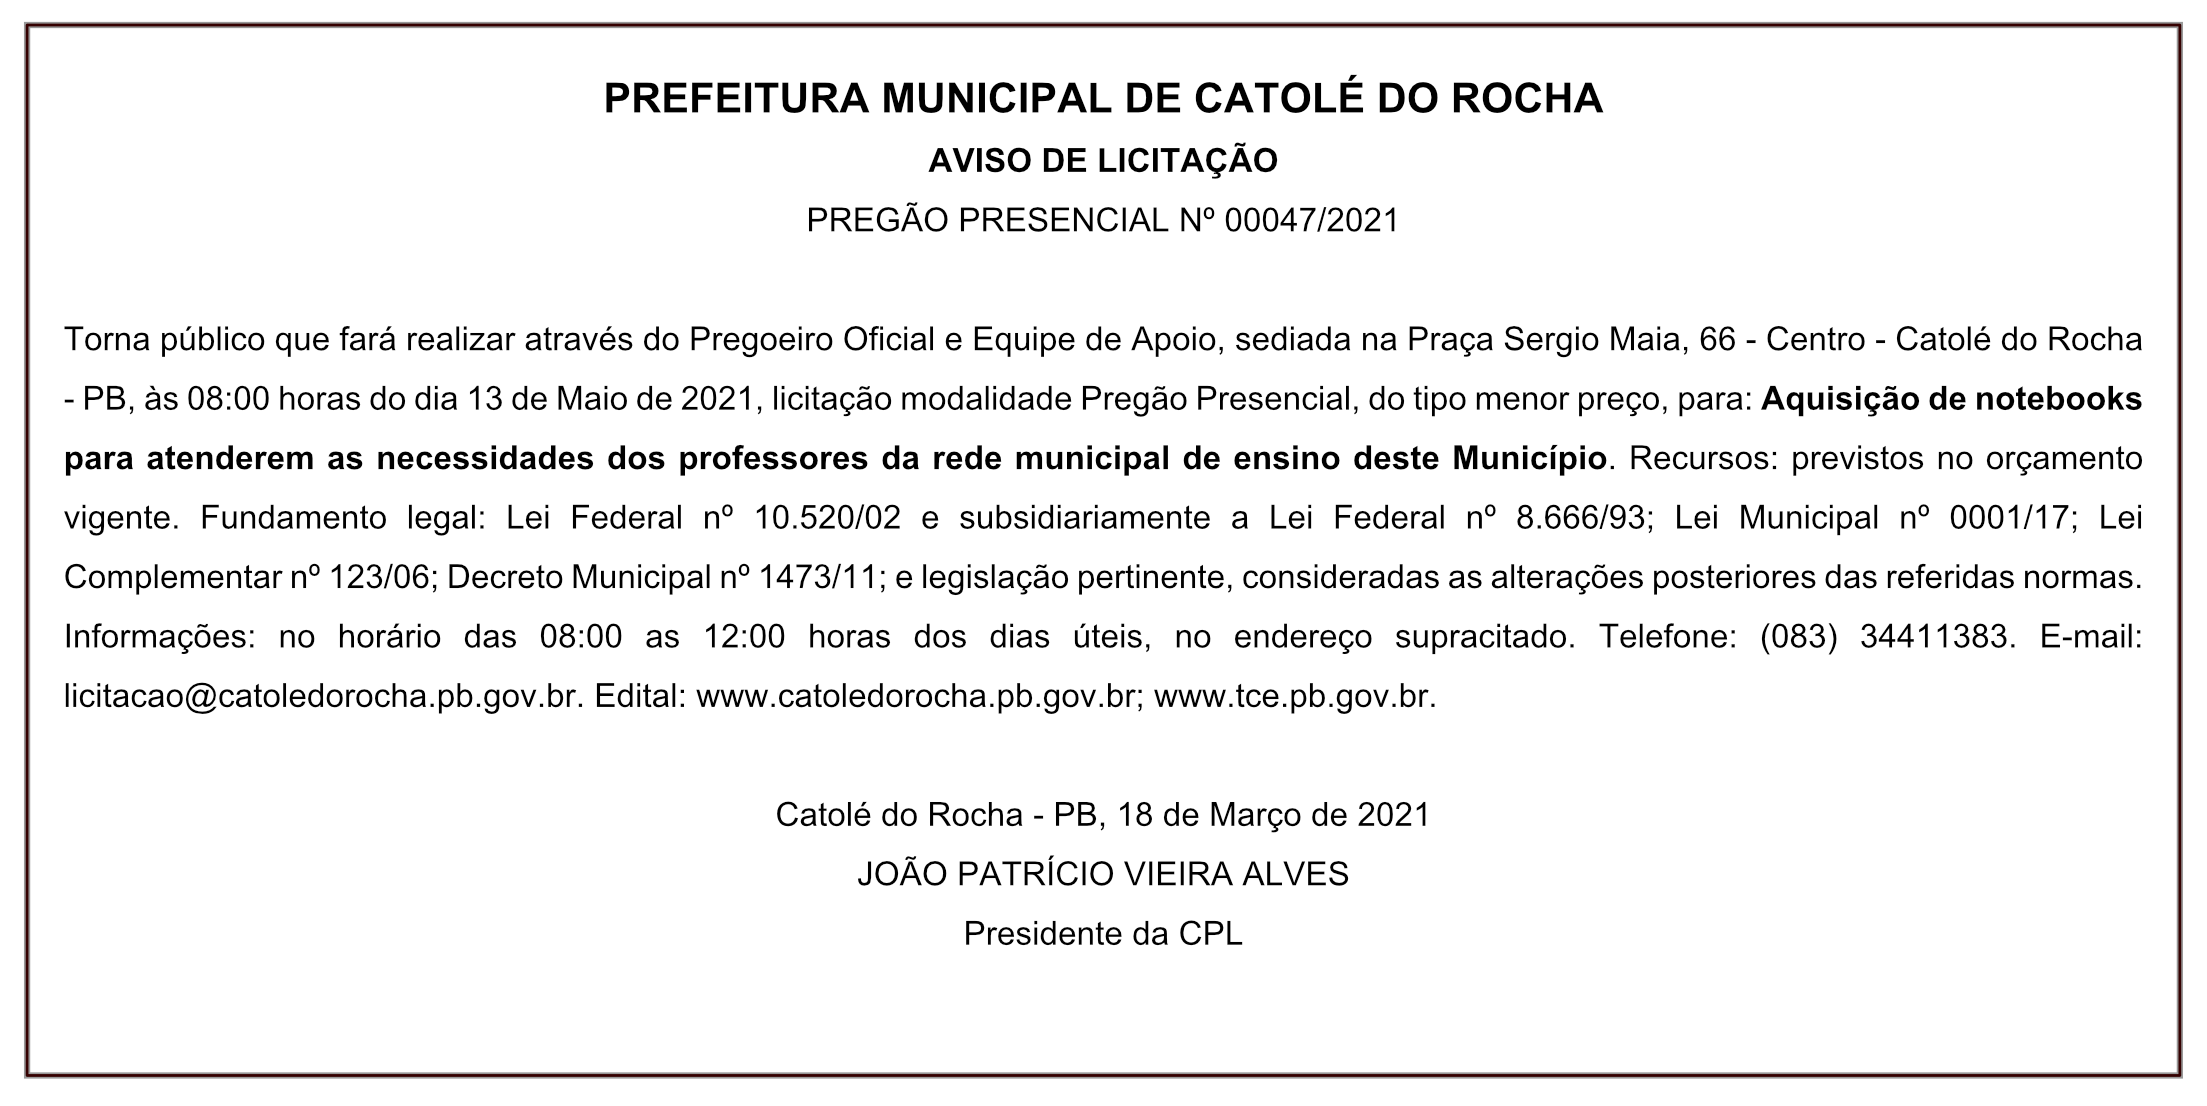 PREFEITURA MUNICIPAL DE CATOLÉ DO ROCHA – AVISO DE LICITAÇÃO – PREGÃO PRESENCIAL Nº 00047/2021